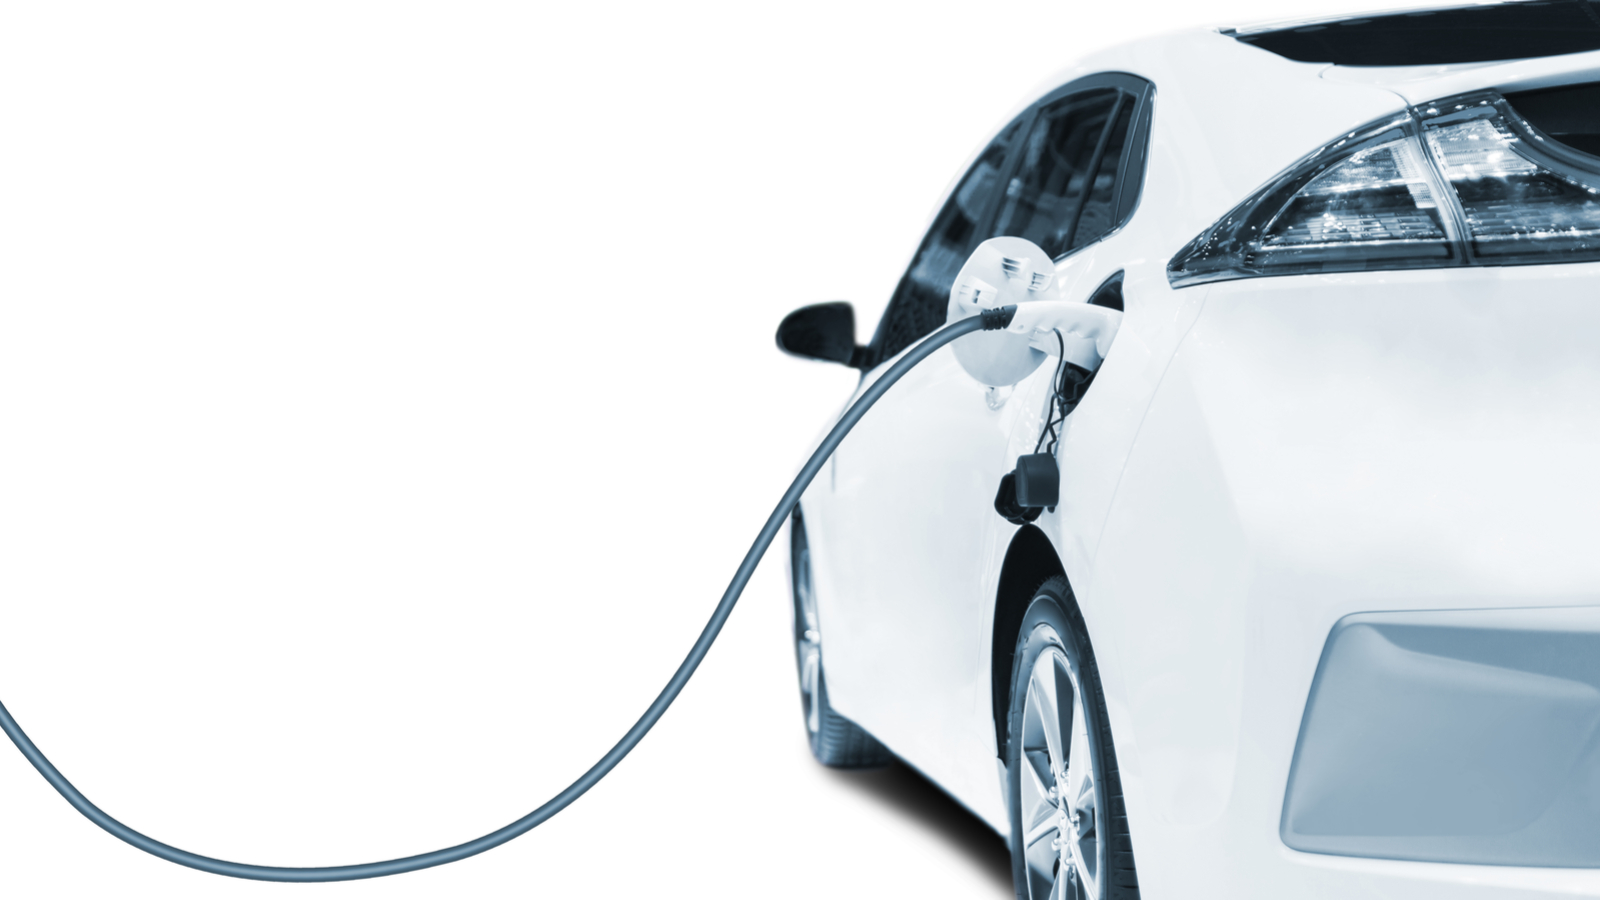 Batterie de voiture électrique : fonctionnement, durée de vie et prix